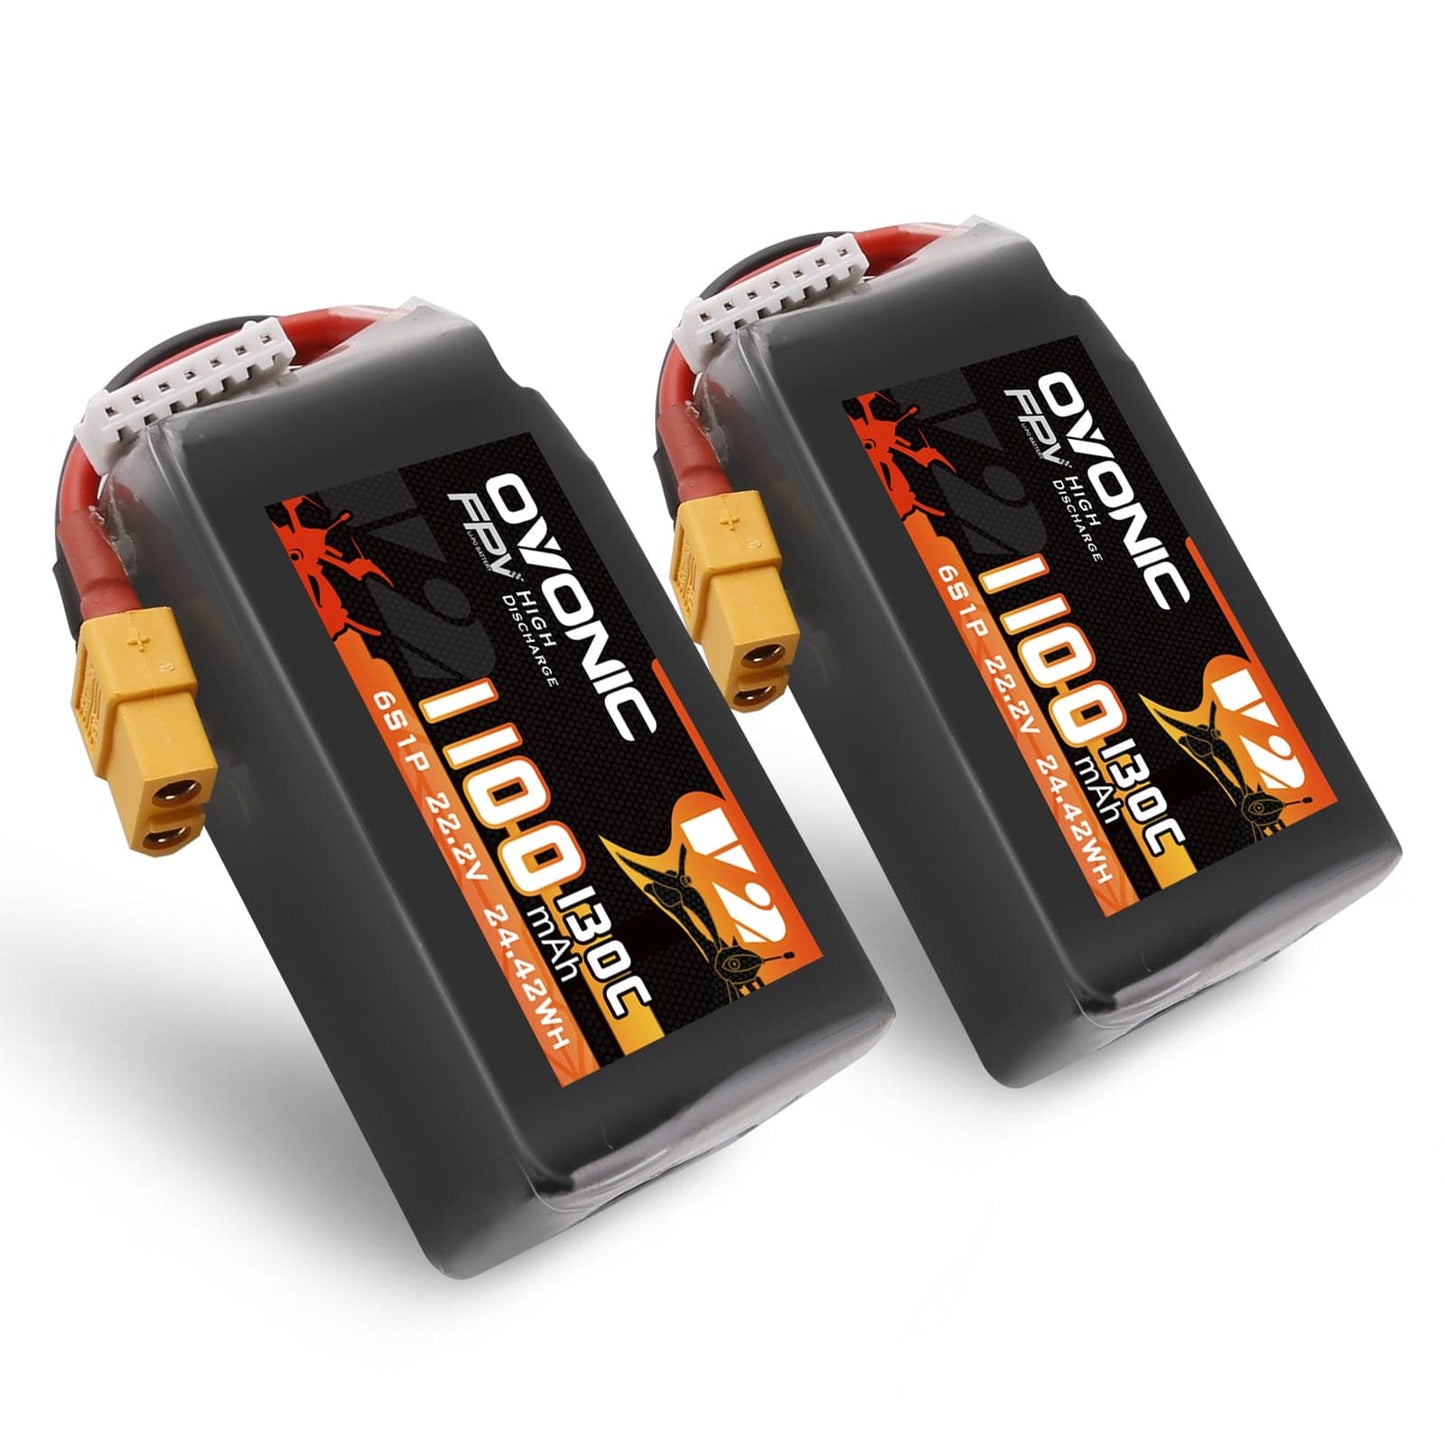 Ovonic 130C 6S 1100mah Lipo Battery 22.2V Pack - XT60 (2 Pack)